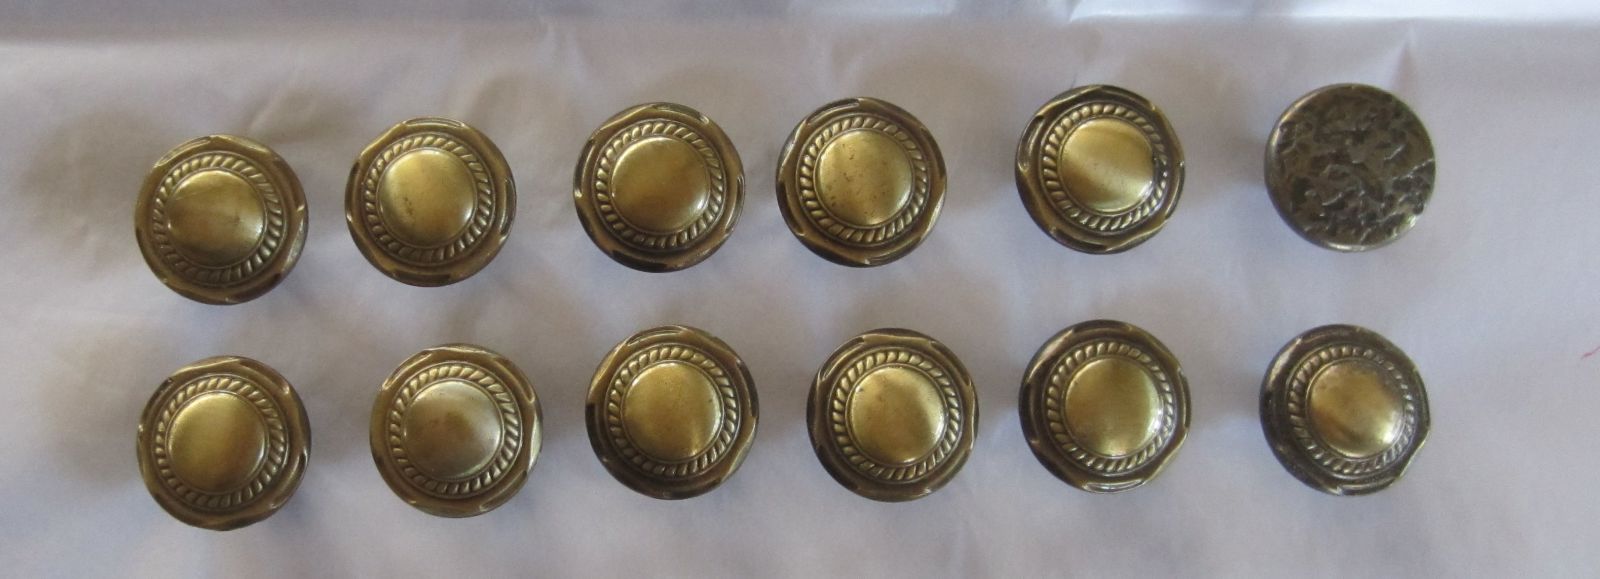 11 Amerock Vintage Brass Button Circular Round Drawer Cabinet Knob ...